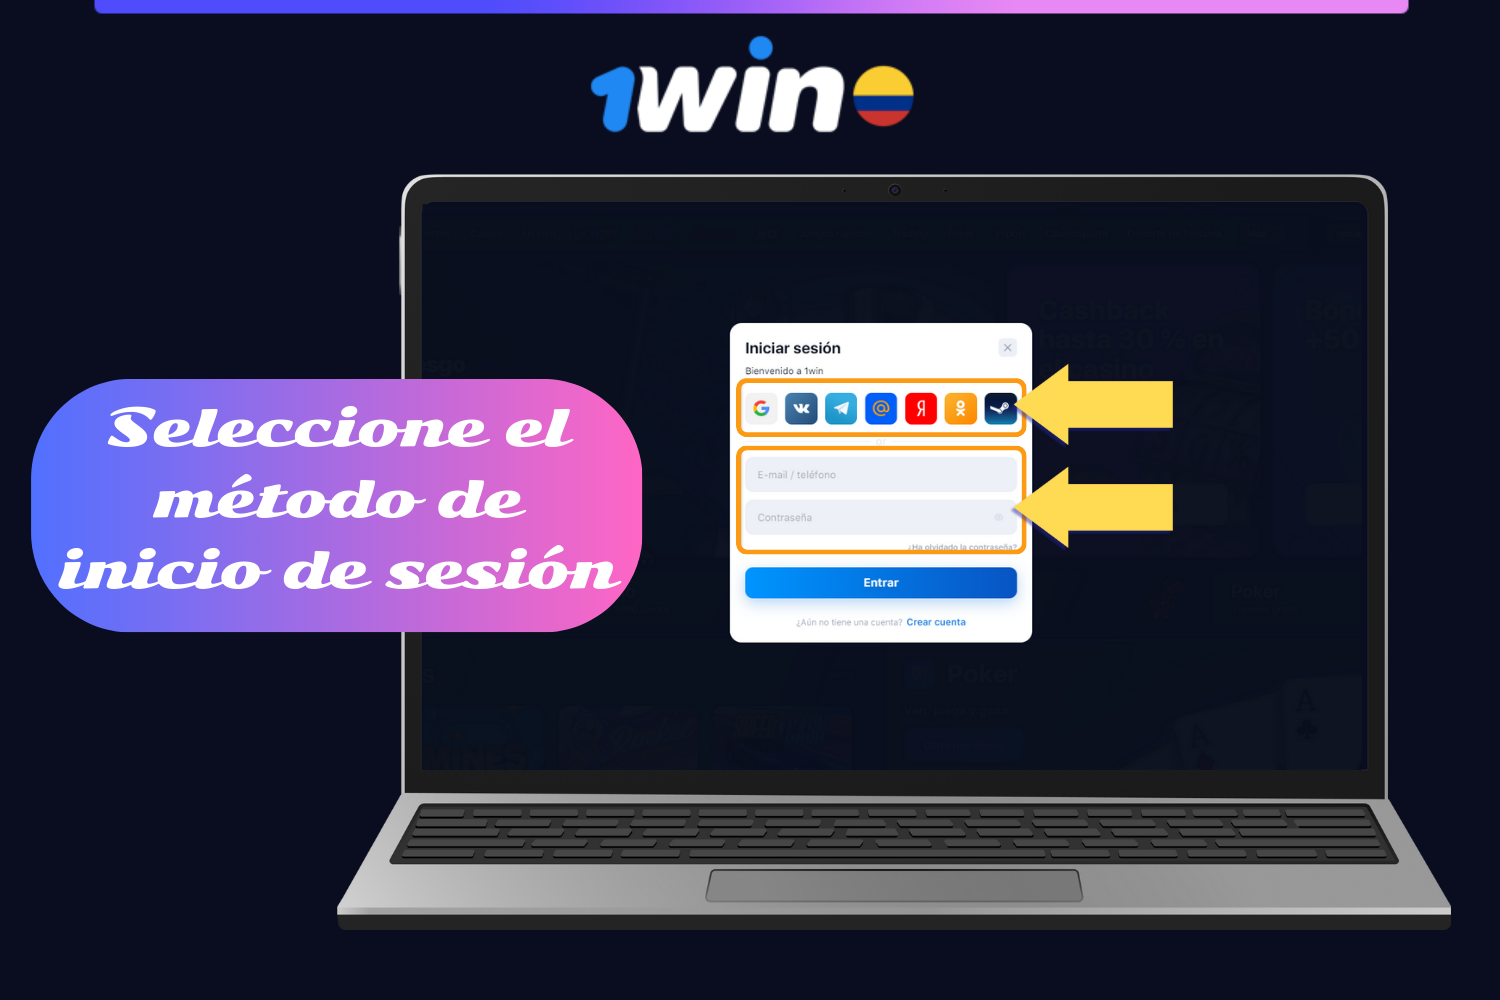 Para iniciar sesión en su cuenta 1win, los usuarios de Colombia deben introducir su correo electrónico o número de teléfono y contraseña o elegir la red social a través de la cual desean iniciar sesión